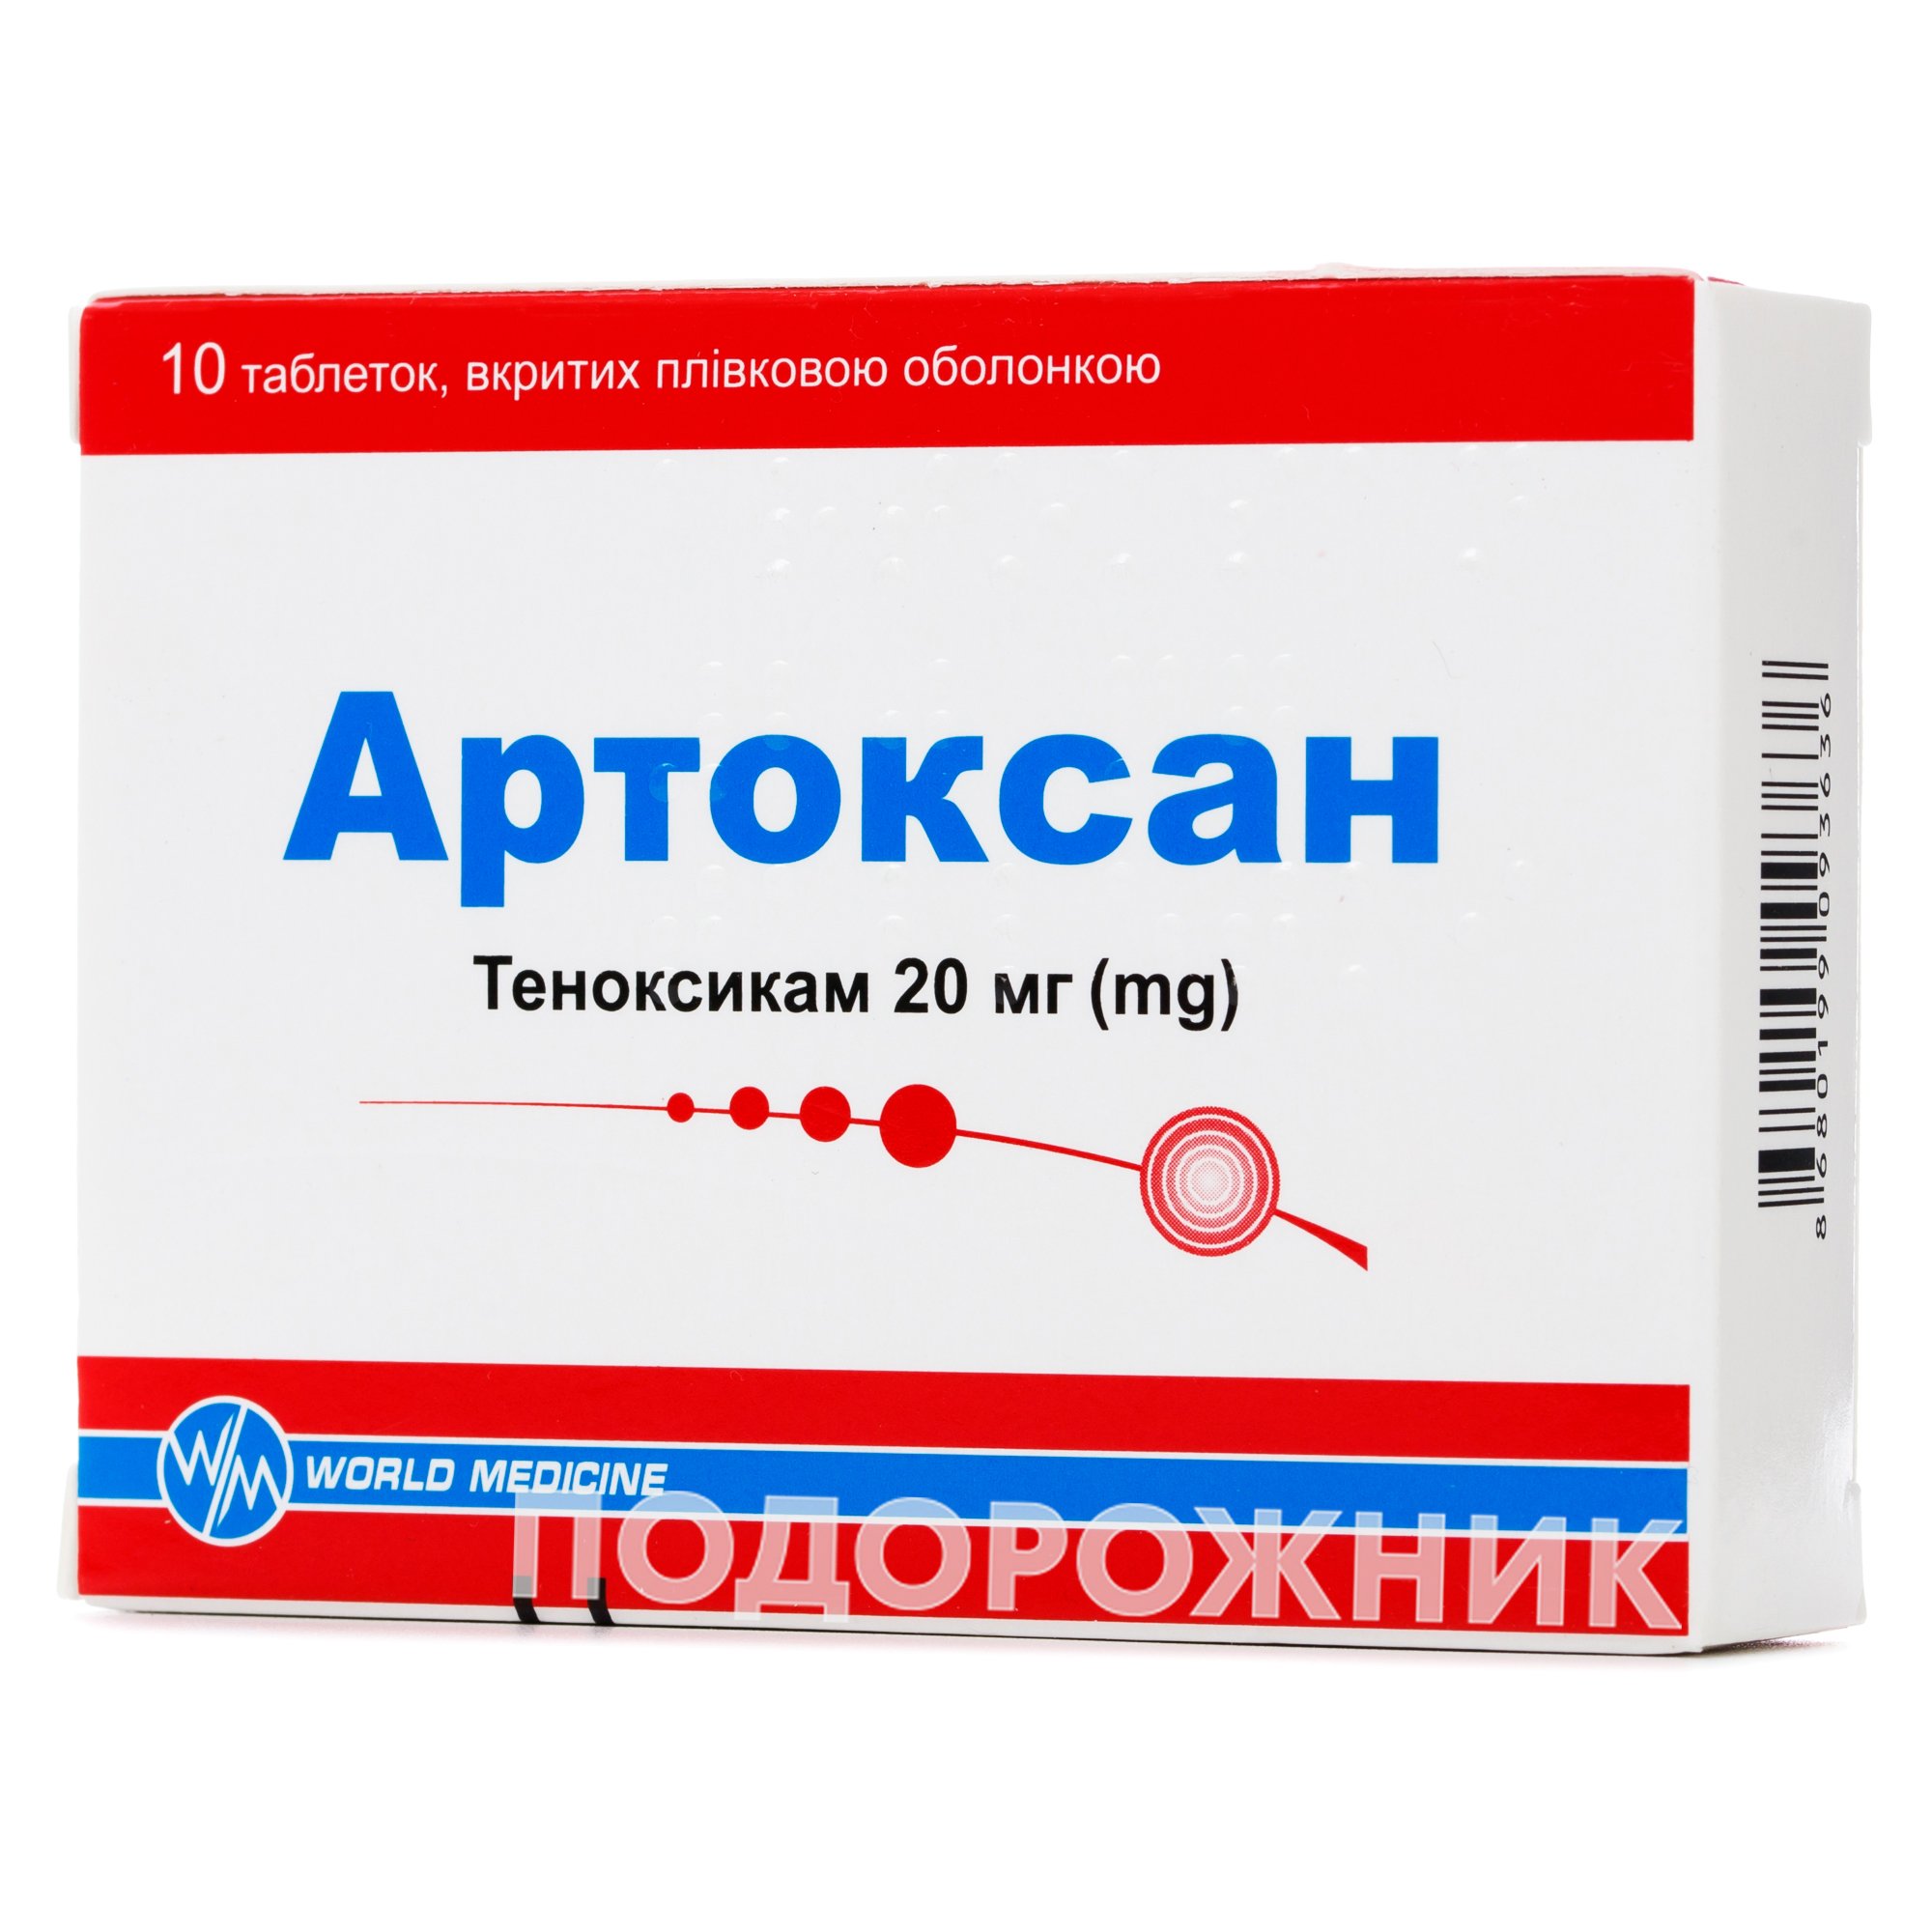 Артоксан 20 мг. Артоксан 20мг №10. Артоксан 2.0. Артоксан таб. Теноксикам уколы купить